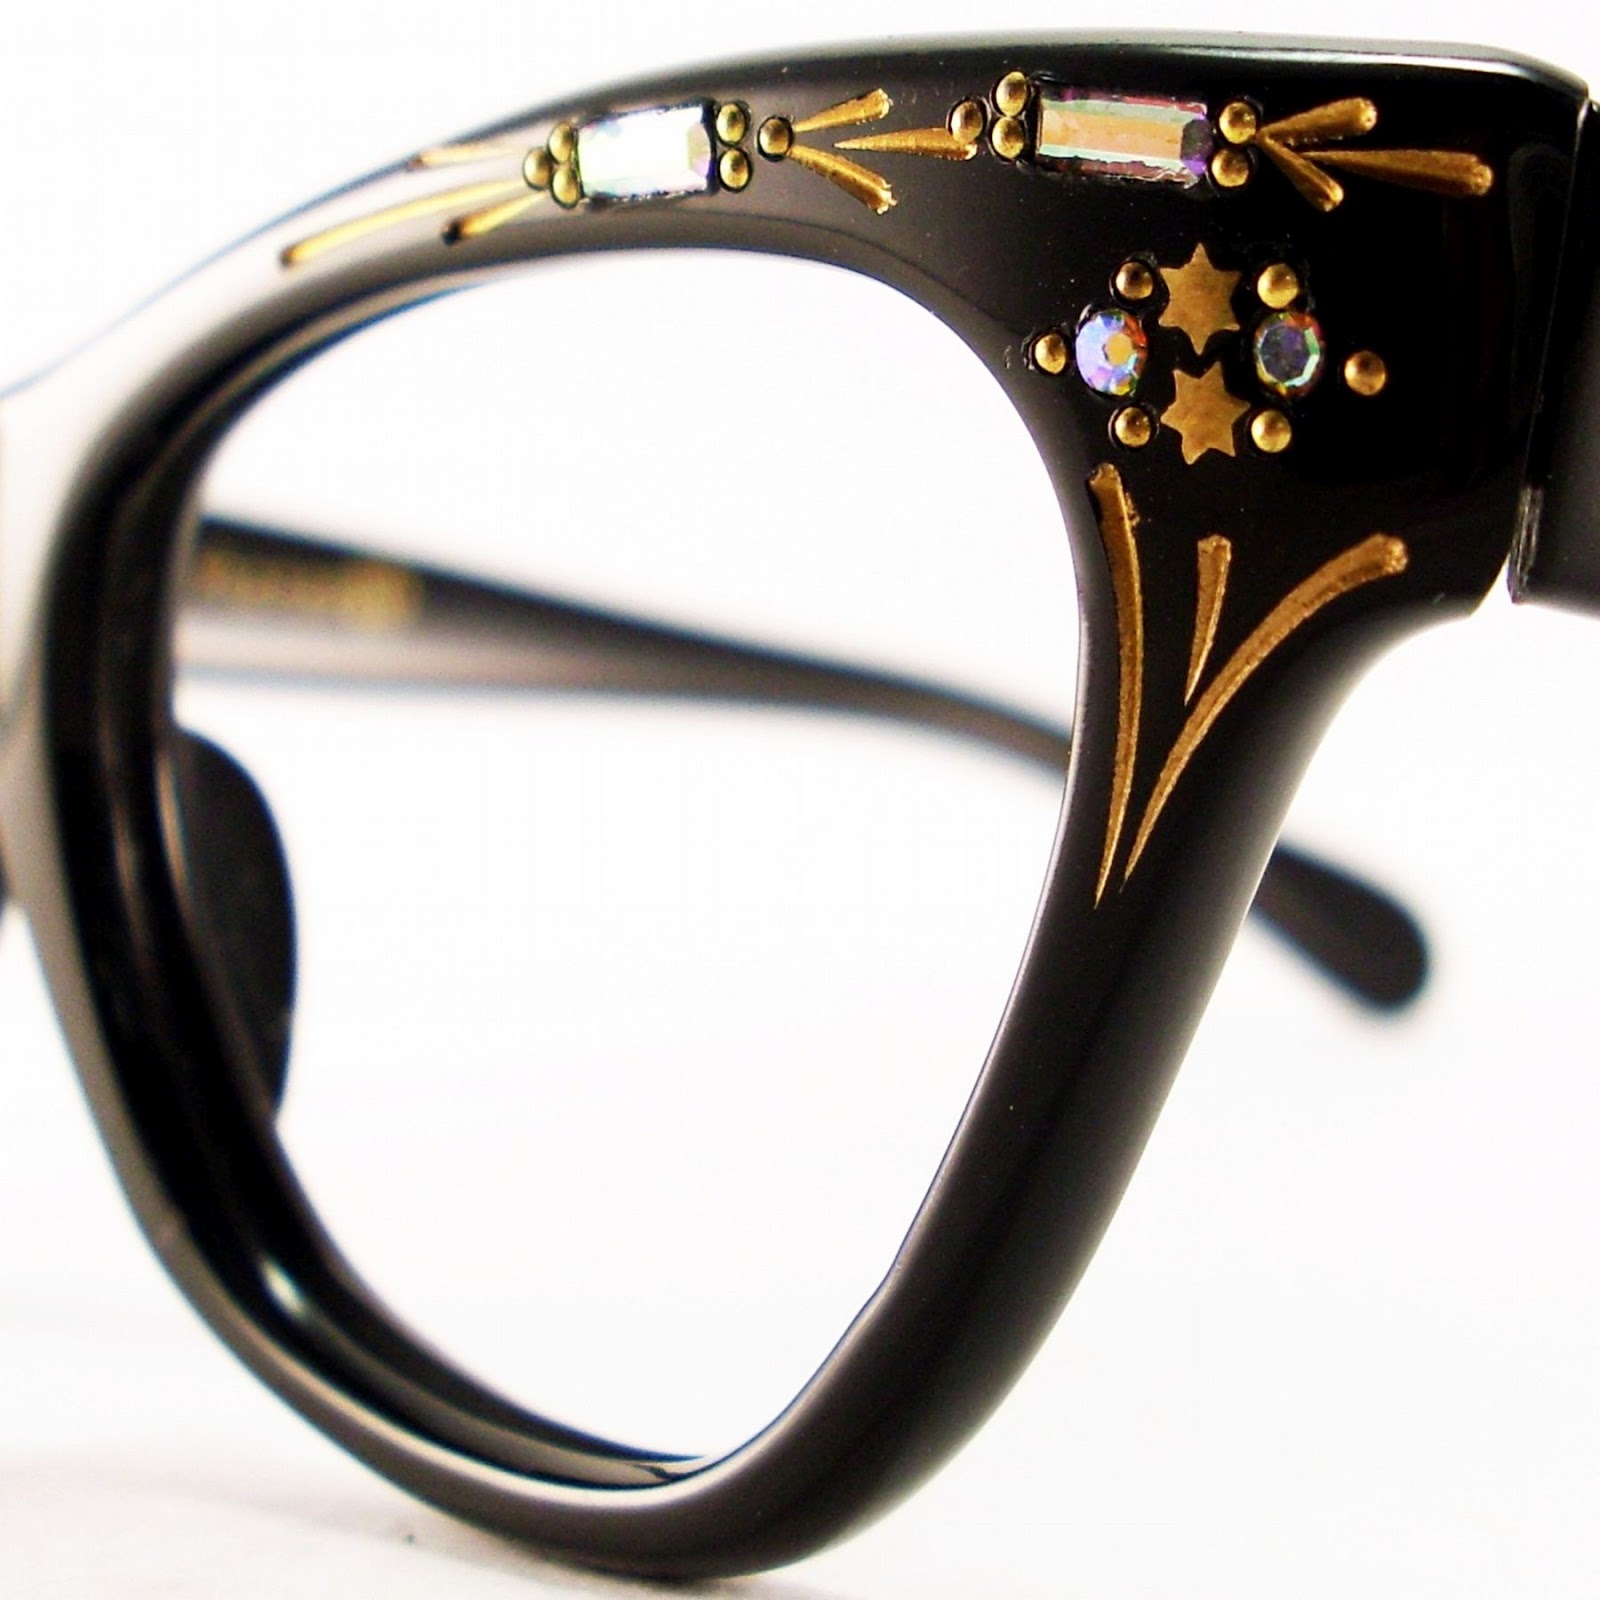 Vintage Eyeglasses Frames Eyewear Sunglasses 50s Cat Eye